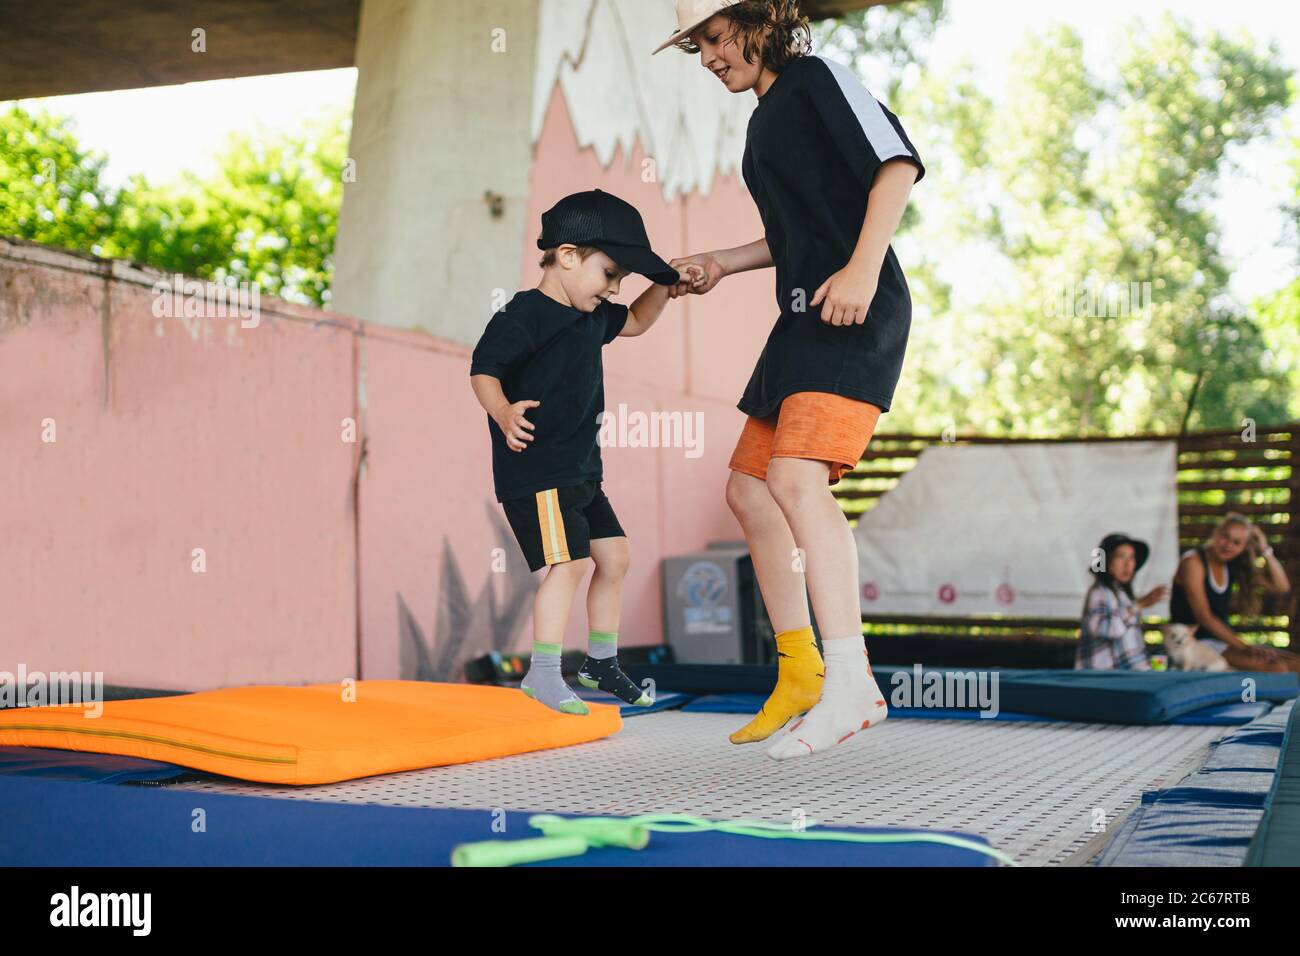 Le grand frère enseigne aux jeunes à sauter sur un trampoline. Enfants en activité de loisir trampoling tenant les mains ensemble. Week-end sportif au centre sportif Banque D'Images